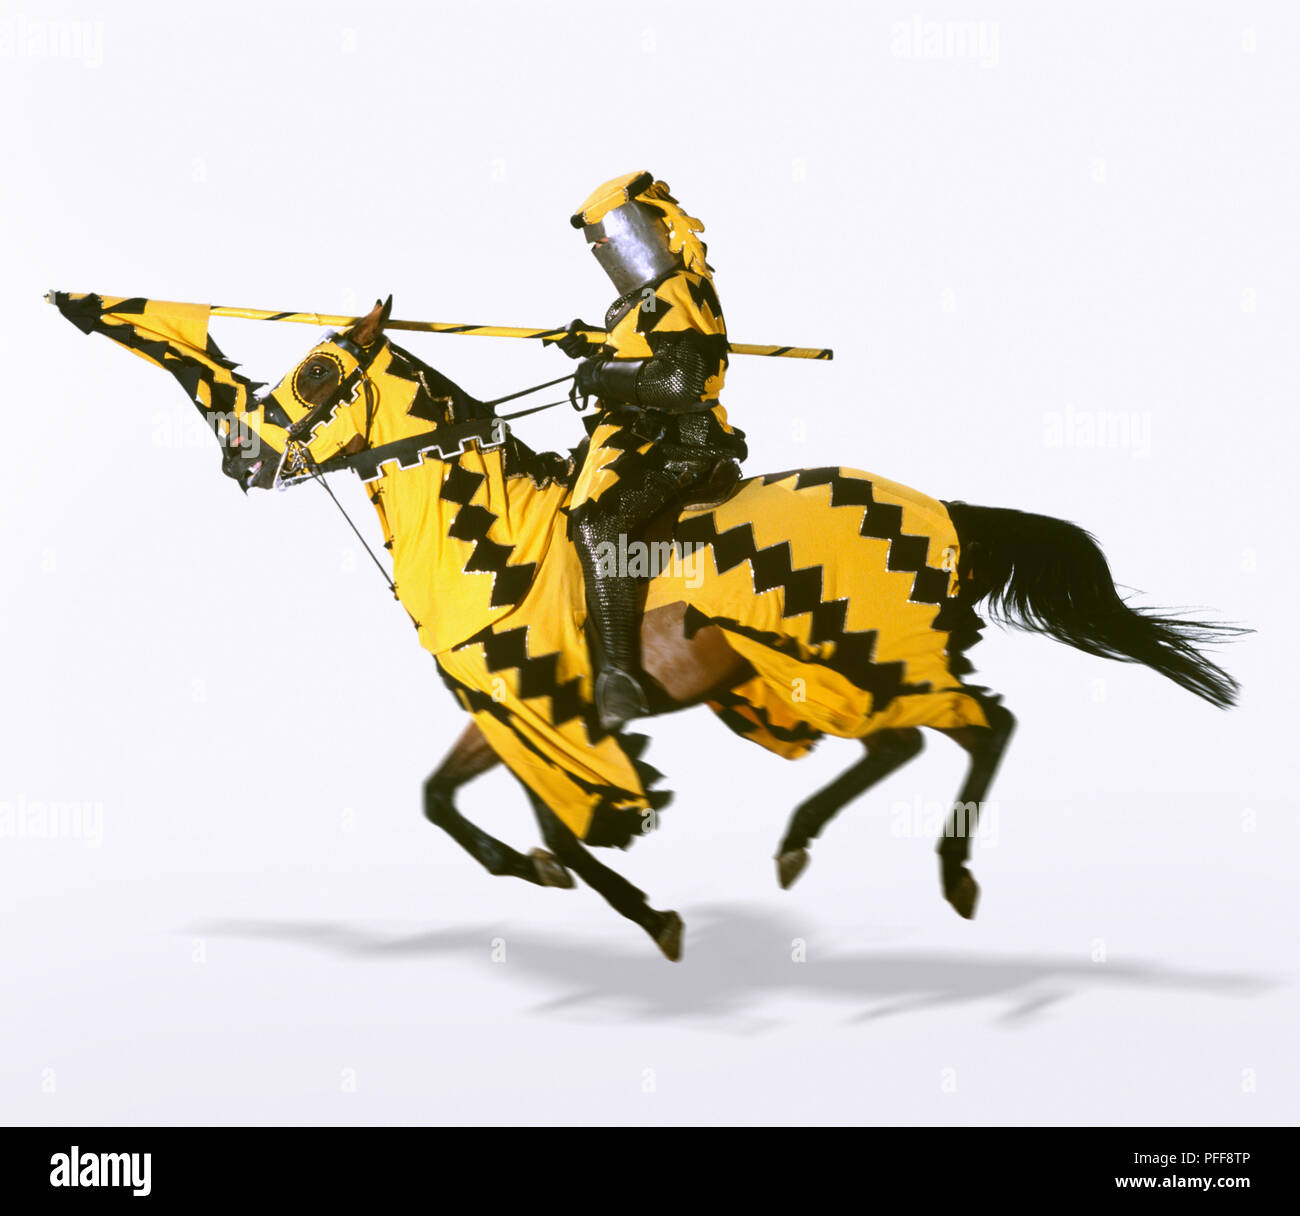 Avant de charge chevalier à cheval avec lance, horse drapées de tissu jaune et noir de l'uniforme de chevalier de contrepartie, vue de côté. Banque D'Images